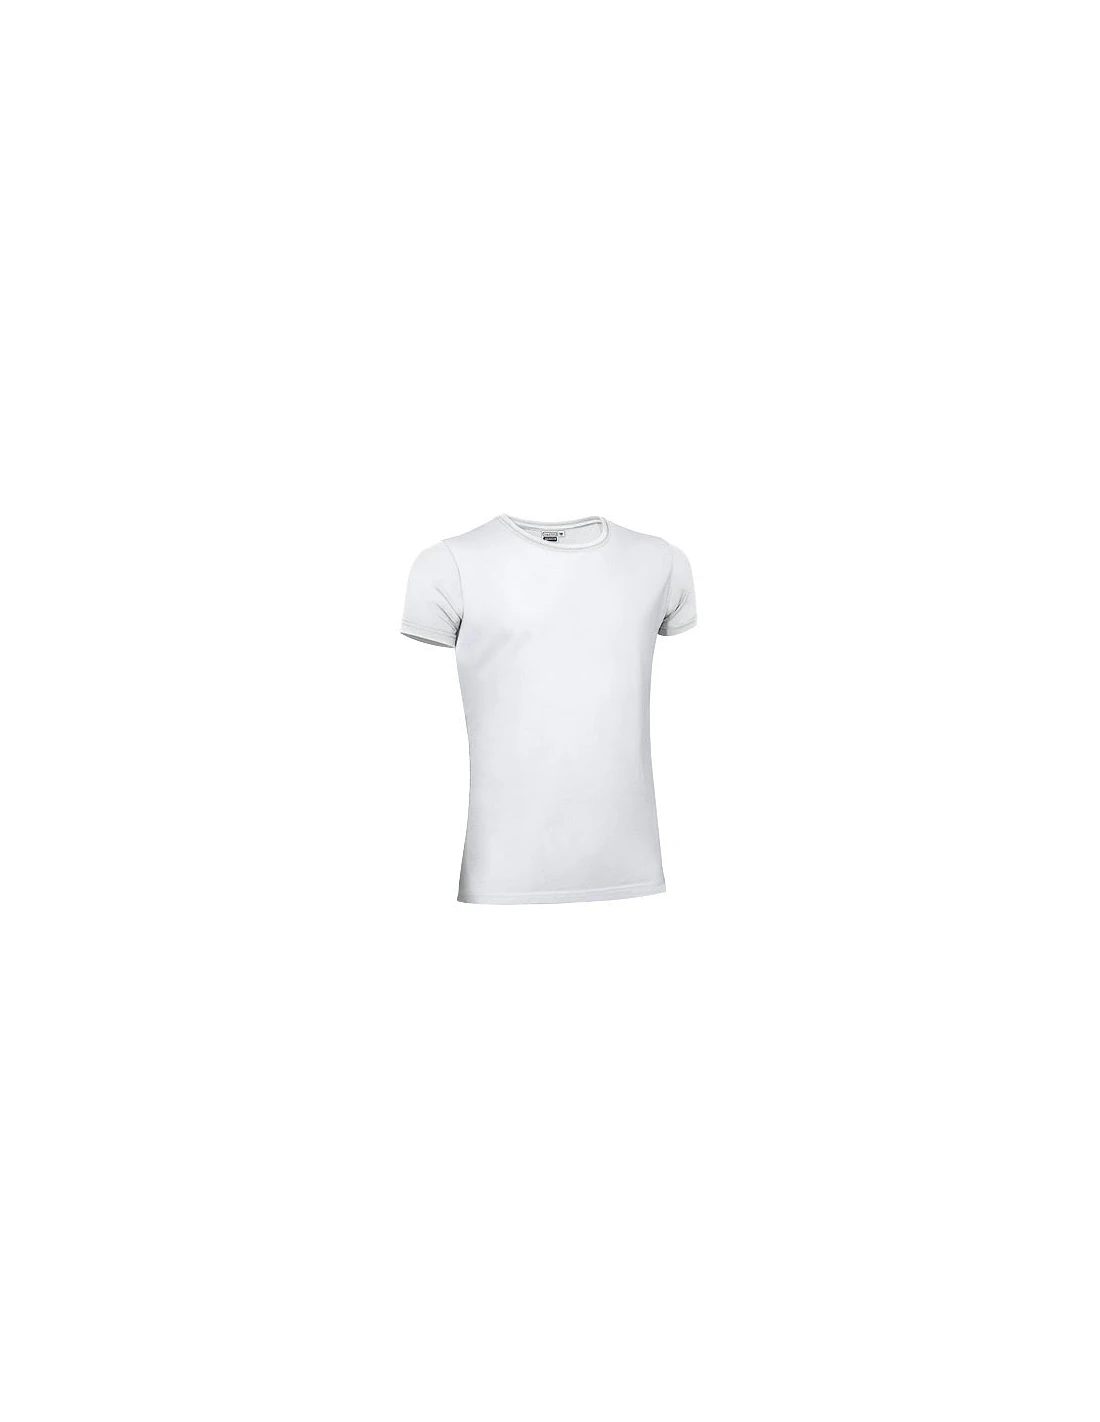 Camiseta de mujer manga larga blanca con rayas marino Marine Women - Sol's